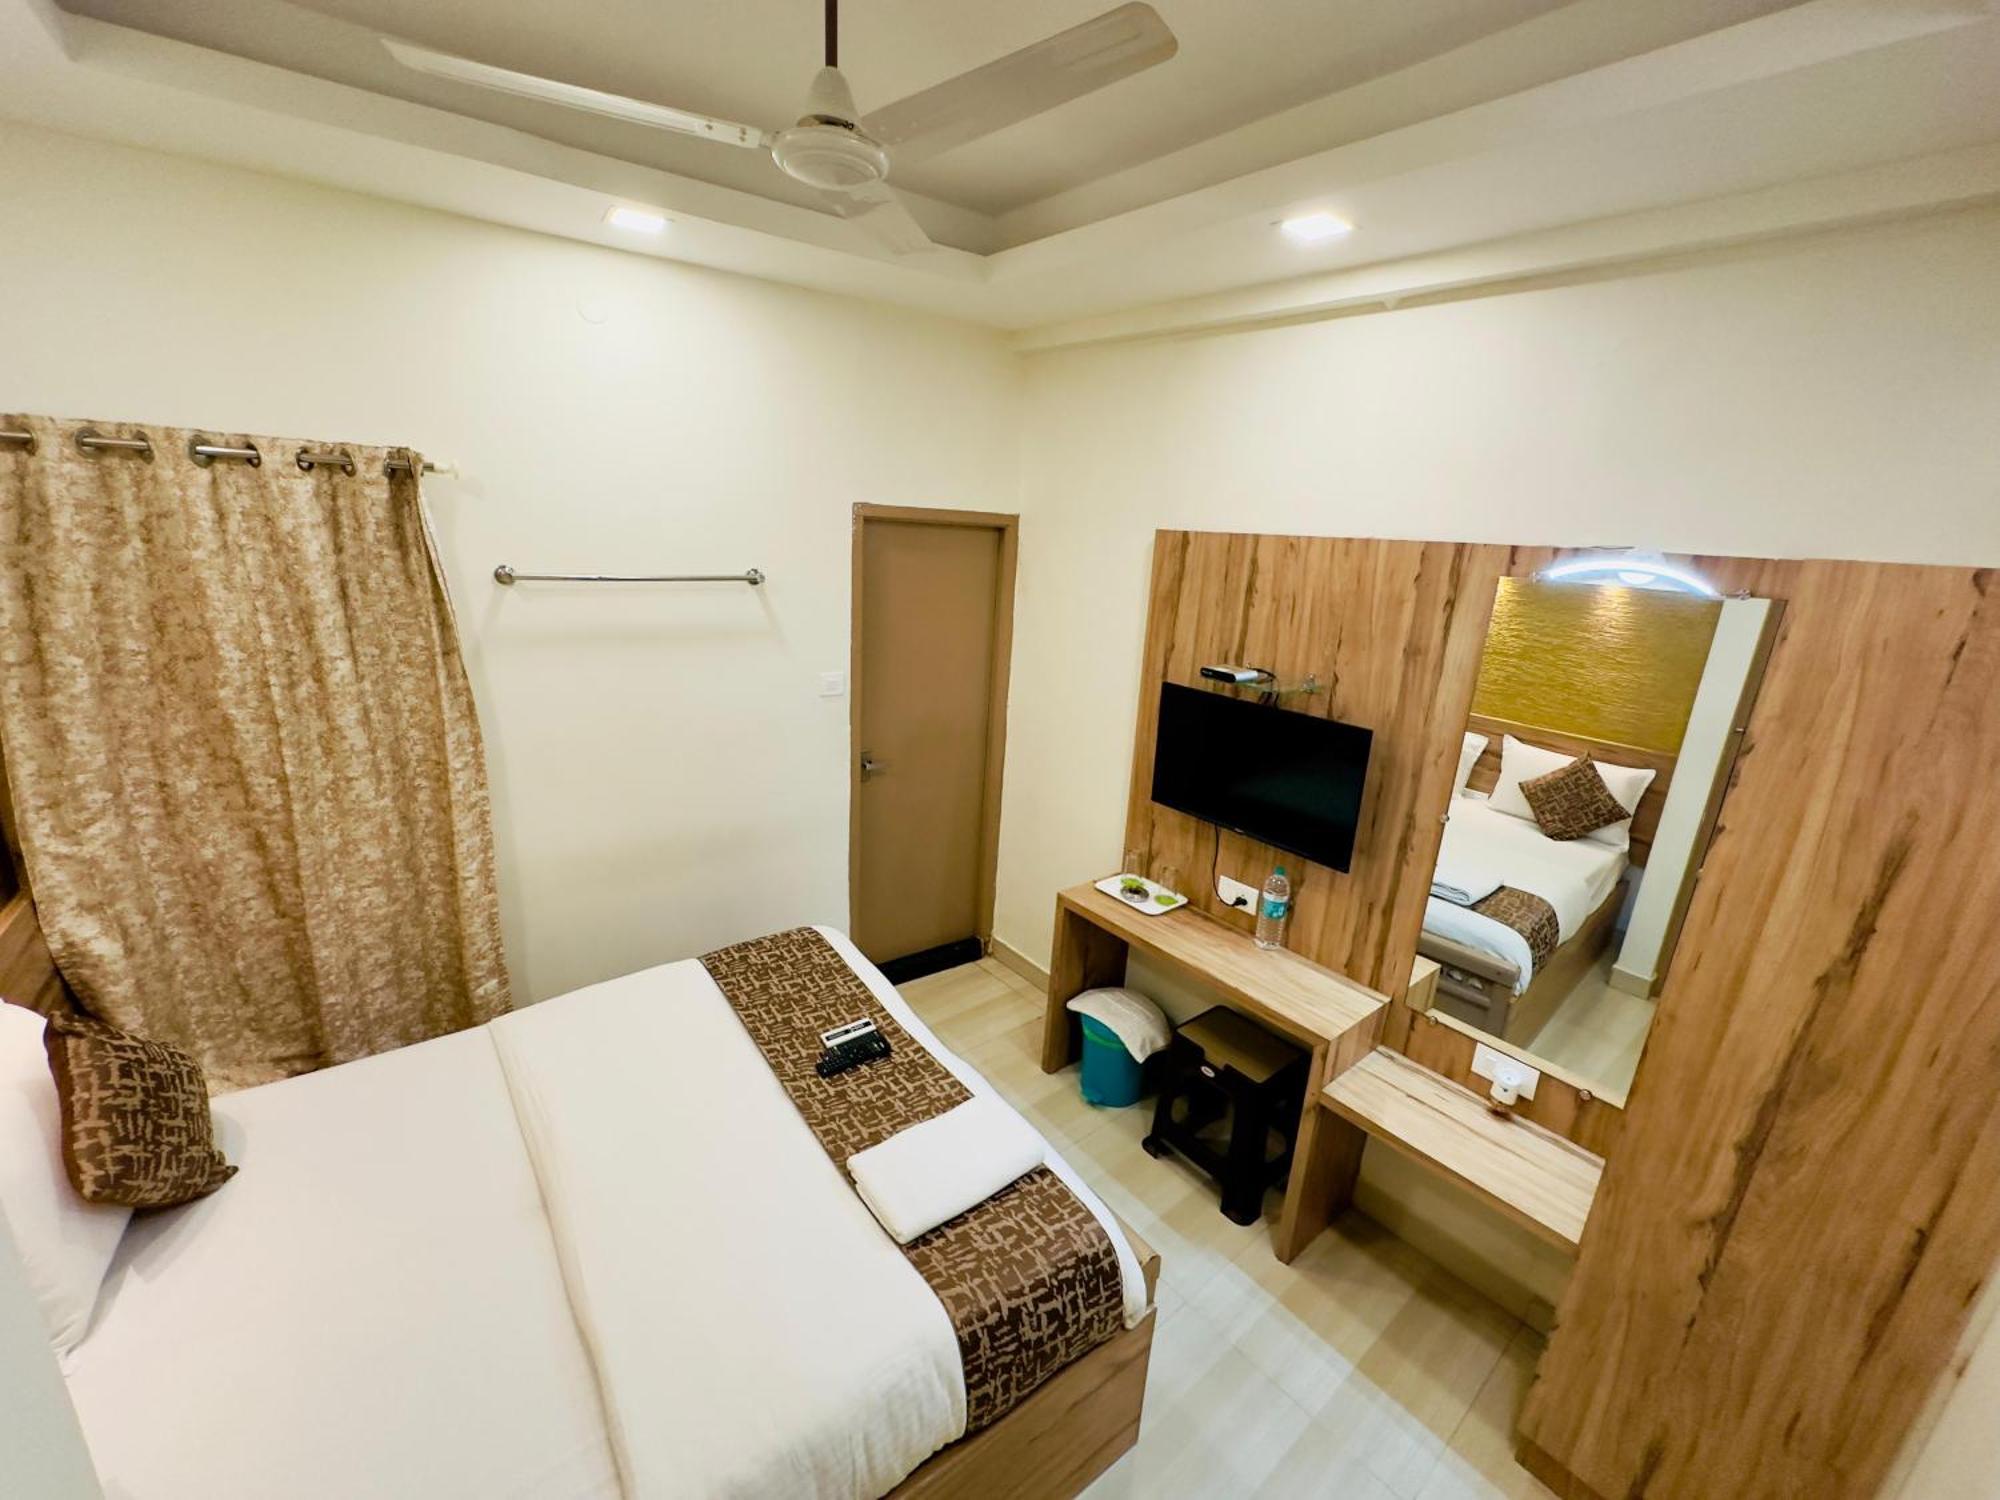 Stay Court - Business Class Hotel - Near Central Railway Station Chennai Zewnętrze zdjęcie